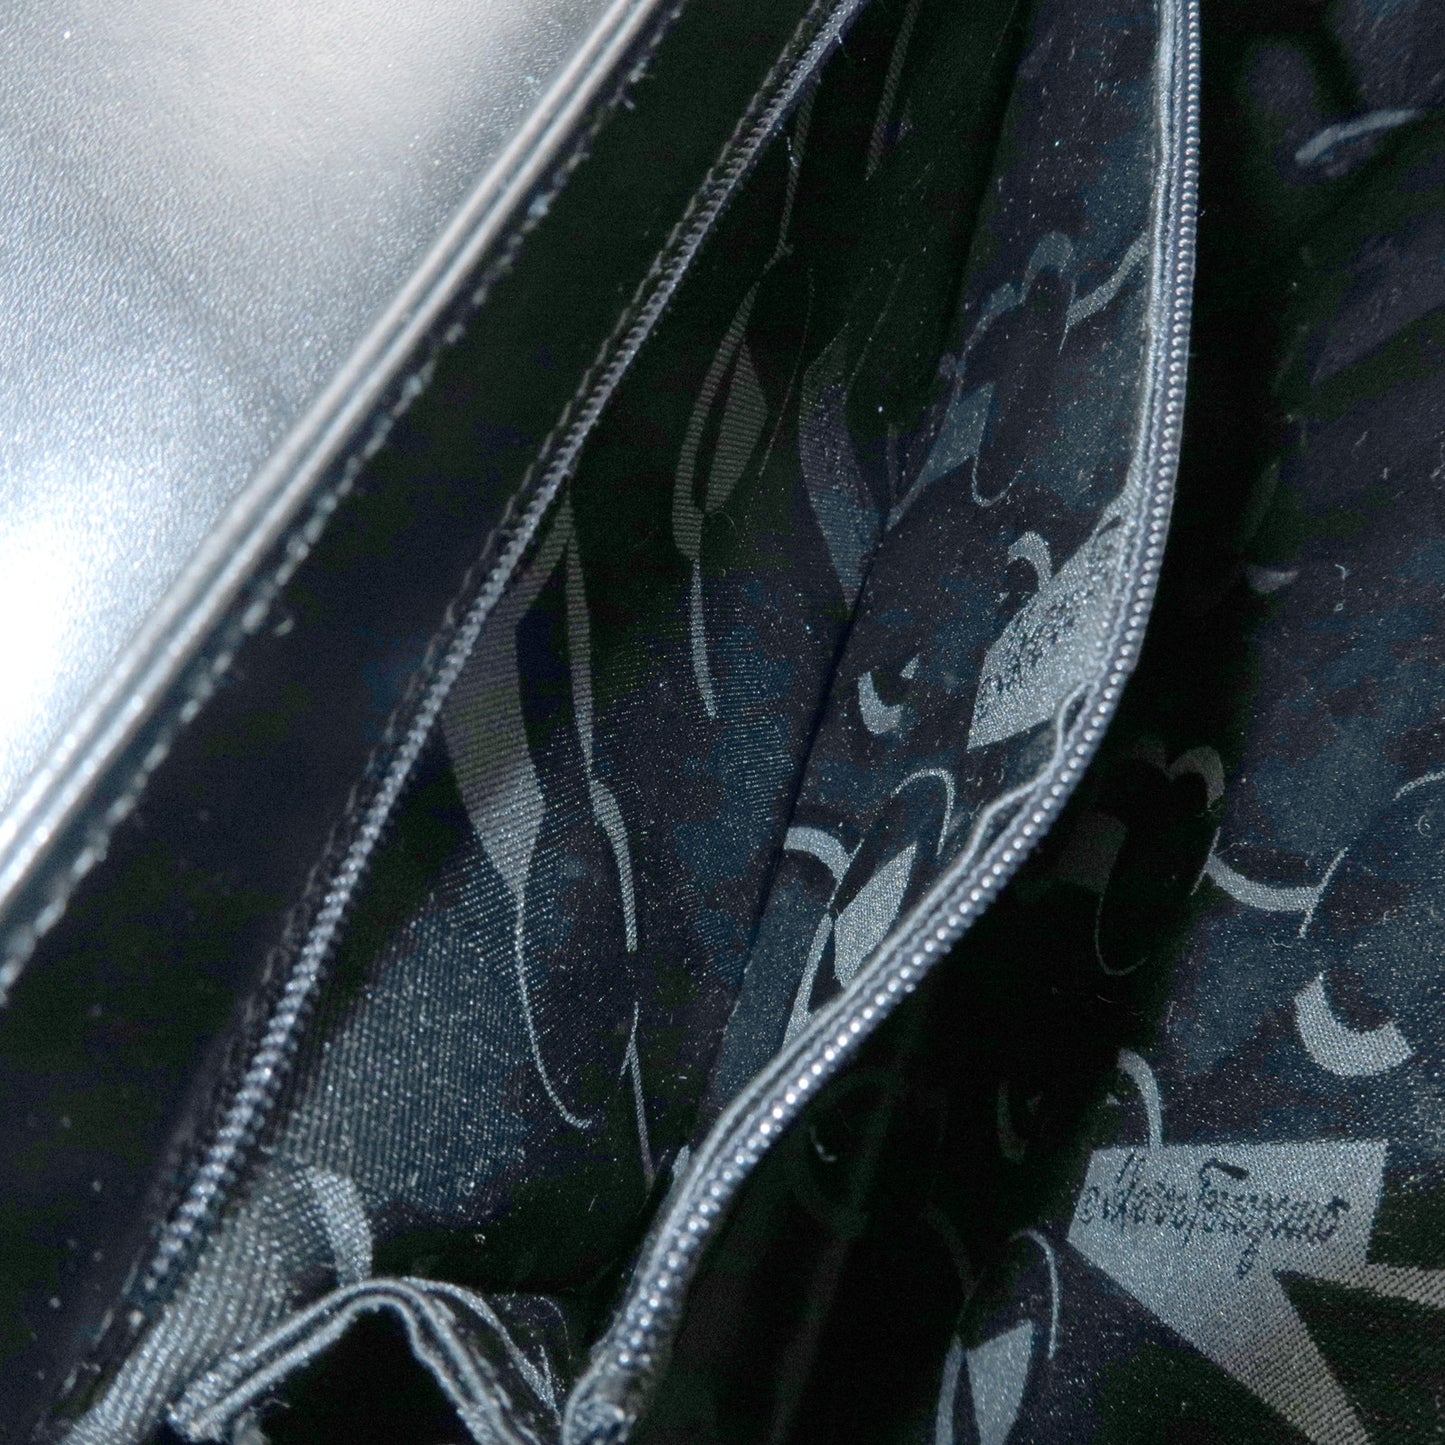 FERRAGAMO Leather Gancini 2Way Hand Shoulder Bag Black AT210536